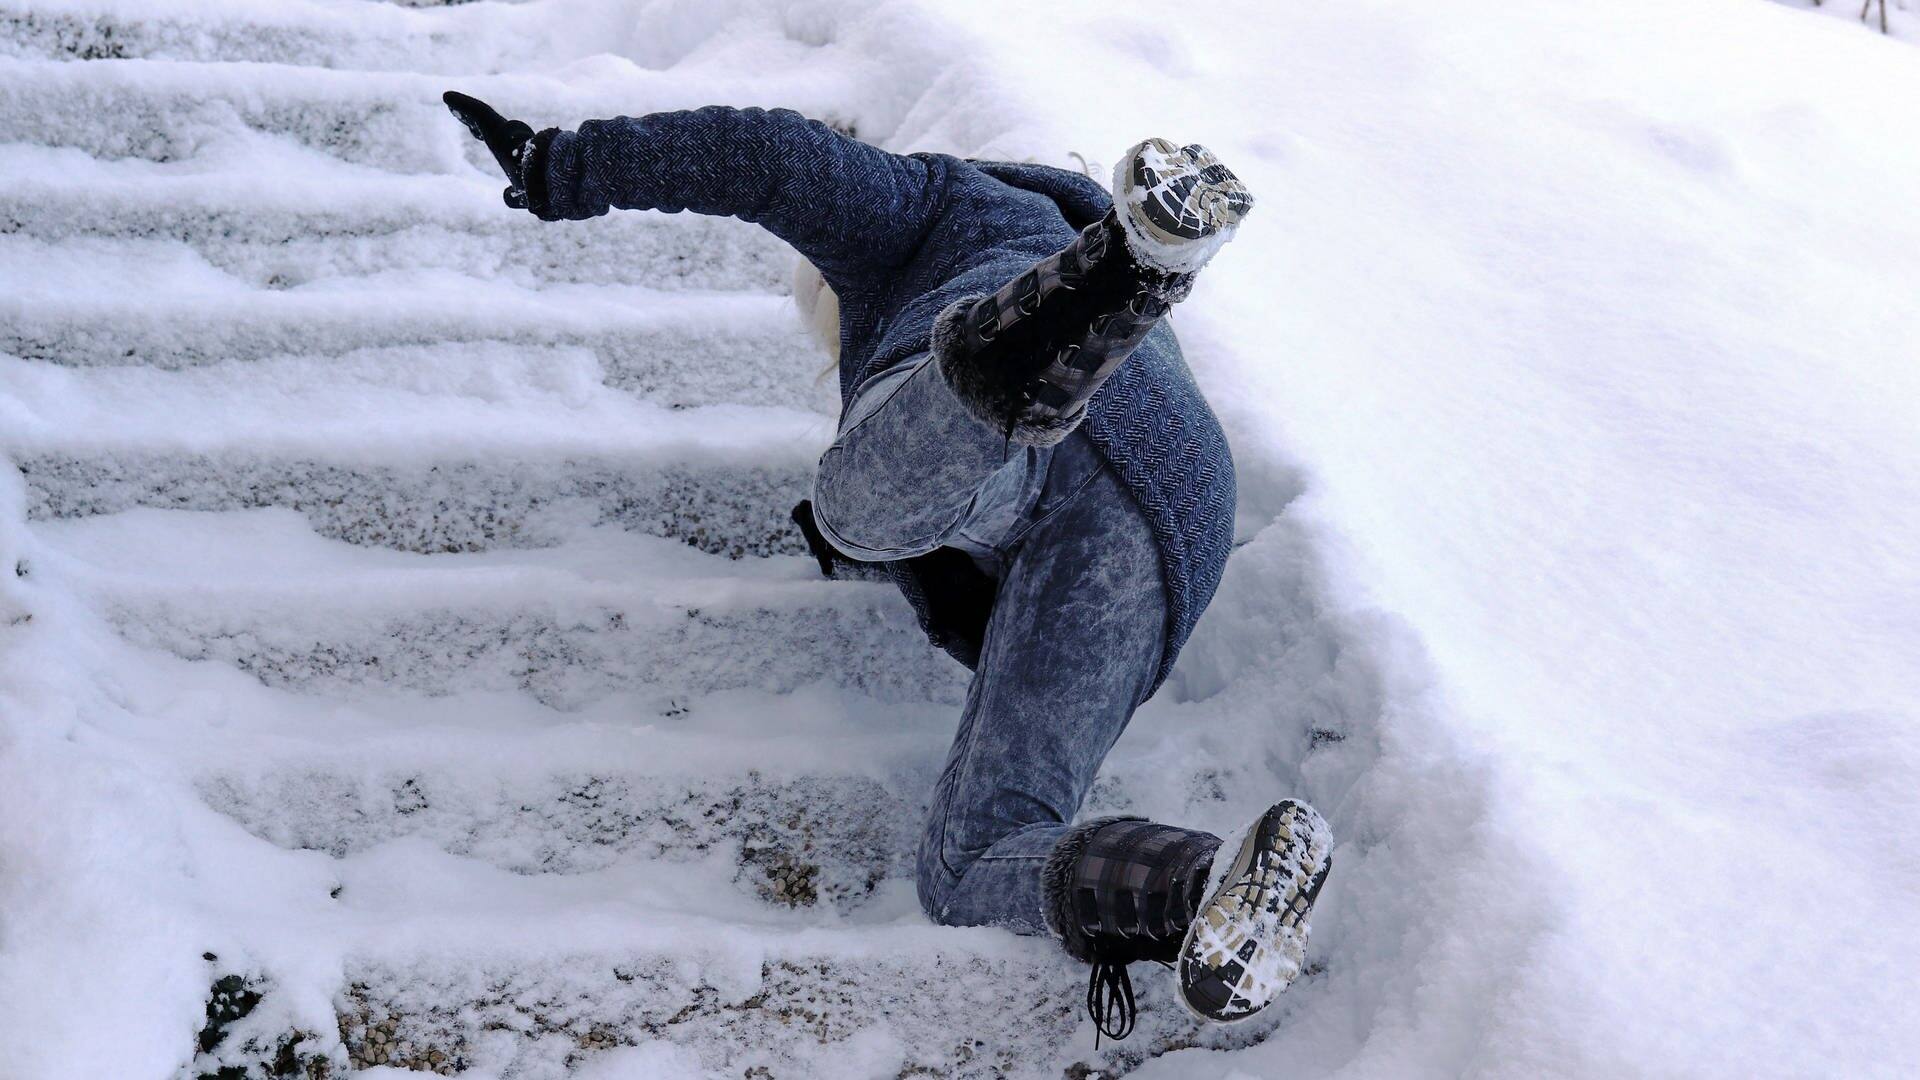 Mensch rutscht auf einer vereisten Treppe aus (Foto: AdobeStock: Astrid Gast)